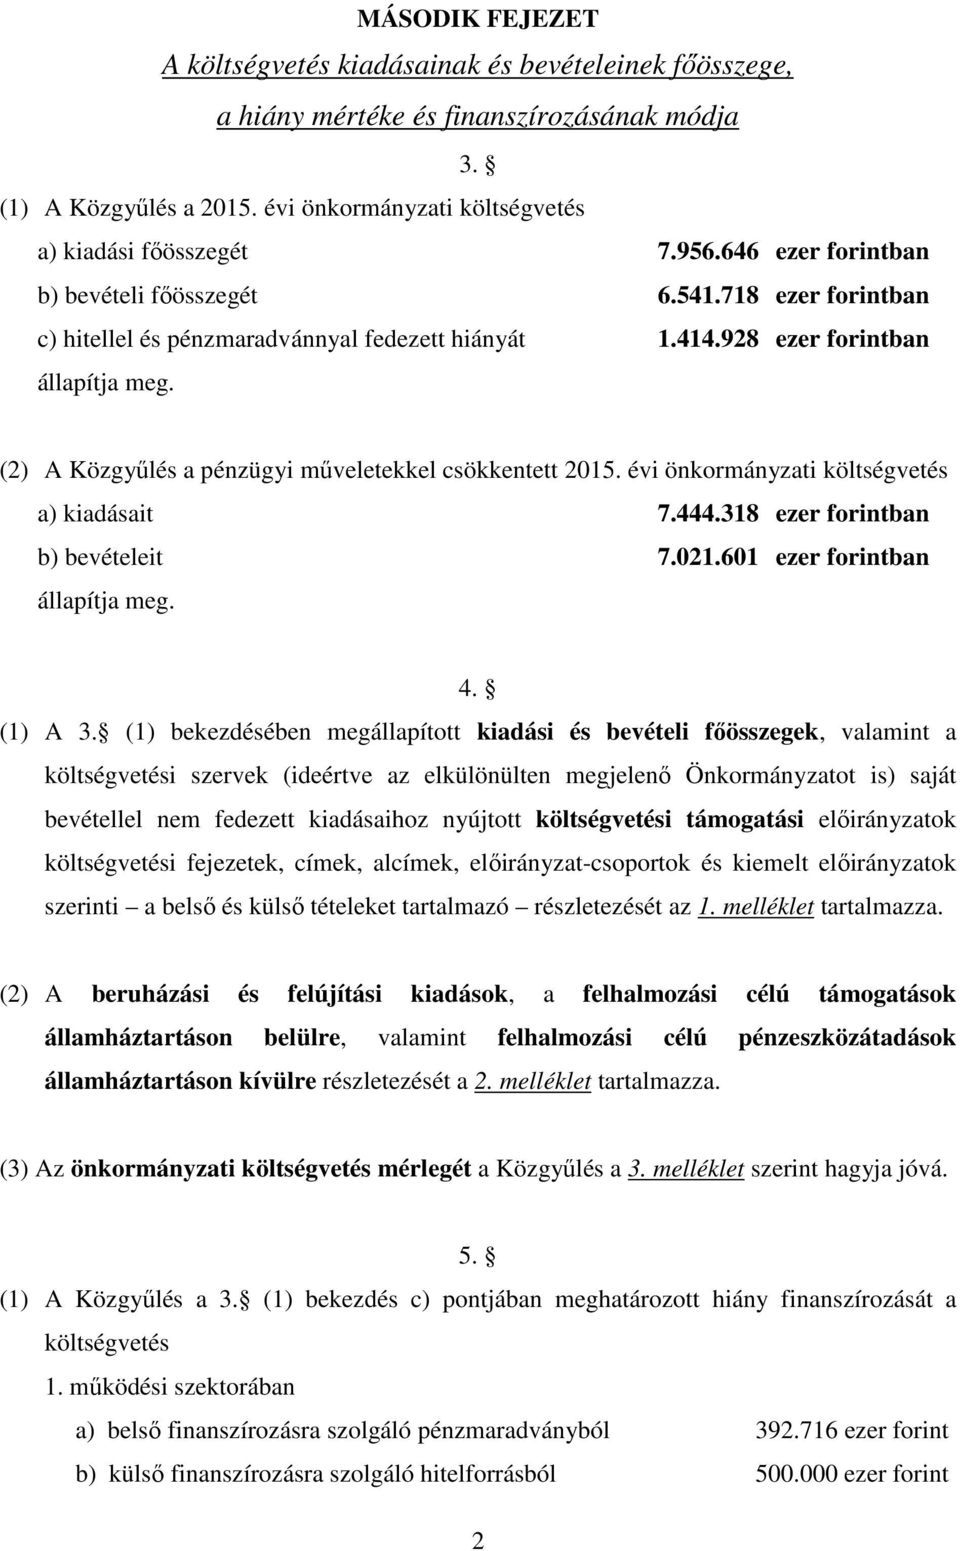 (2) A Közgyűlés a pénzügyi műveletekkel csökkentett 2015. évi önkormányzati költségvetés a) kiadásait 7.444.318 ezer forintban b) bevételeit 7.021.601 ezer forintban állapítja meg. 4. (1) A 3.